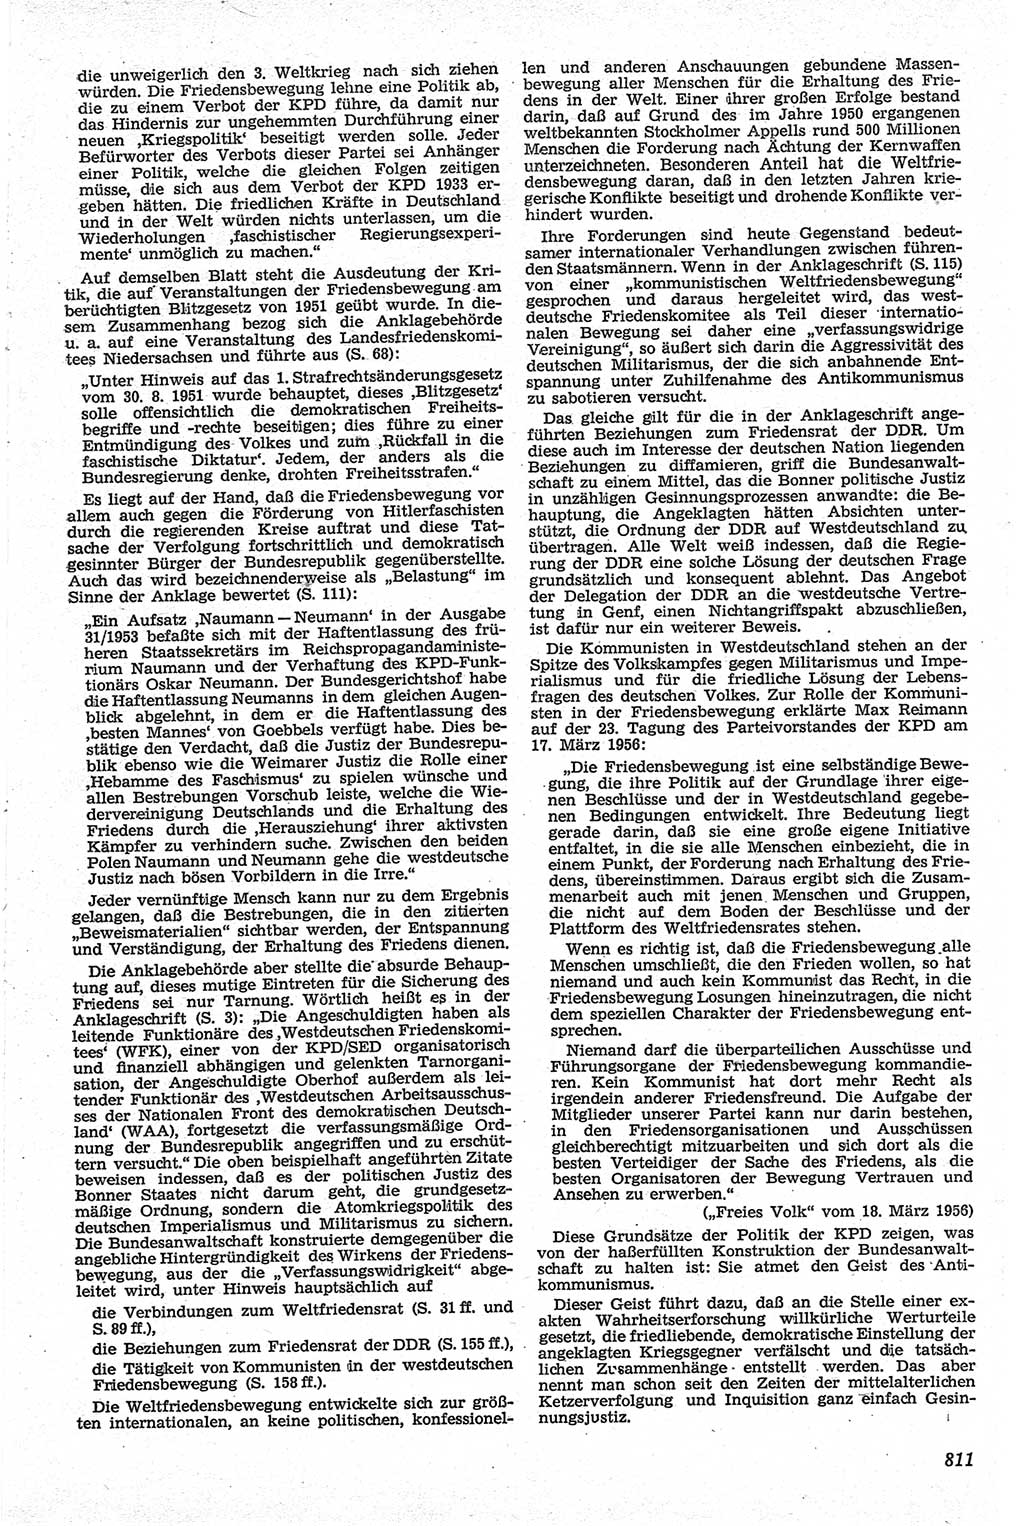 Neue Justiz (NJ), Zeitschrift für Recht und Rechtswissenschaft [Deutsche Demokratische Republik (DDR)], 13. Jahrgang 1959, Seite 811 (NJ DDR 1959, S. 811)